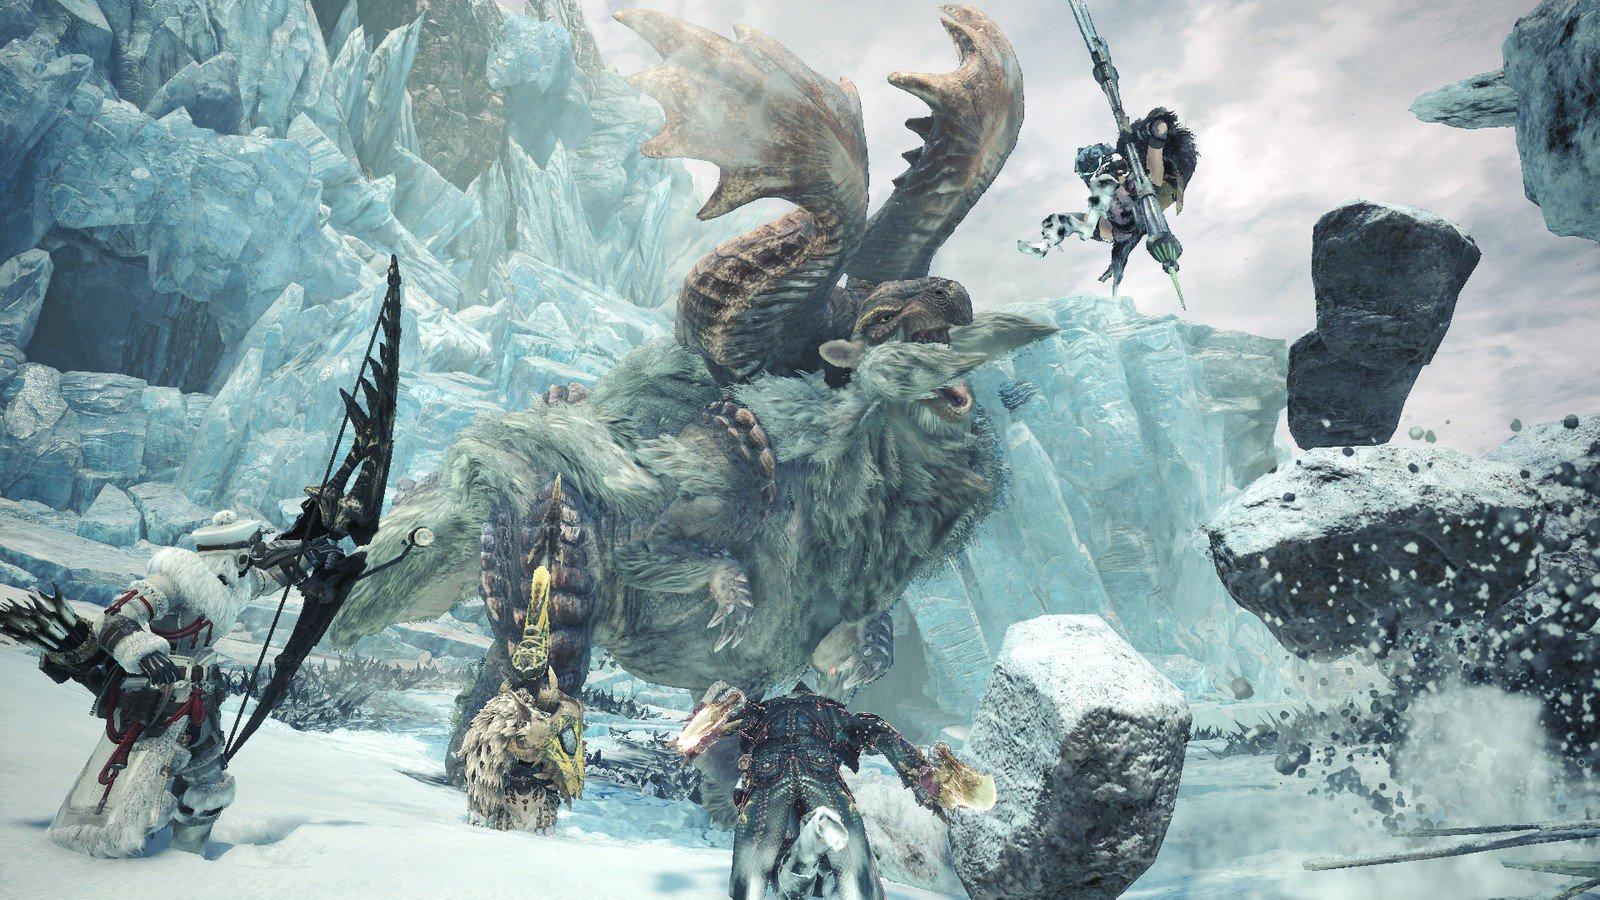 Monster Hunter World's Iceborne expansion feels like a full